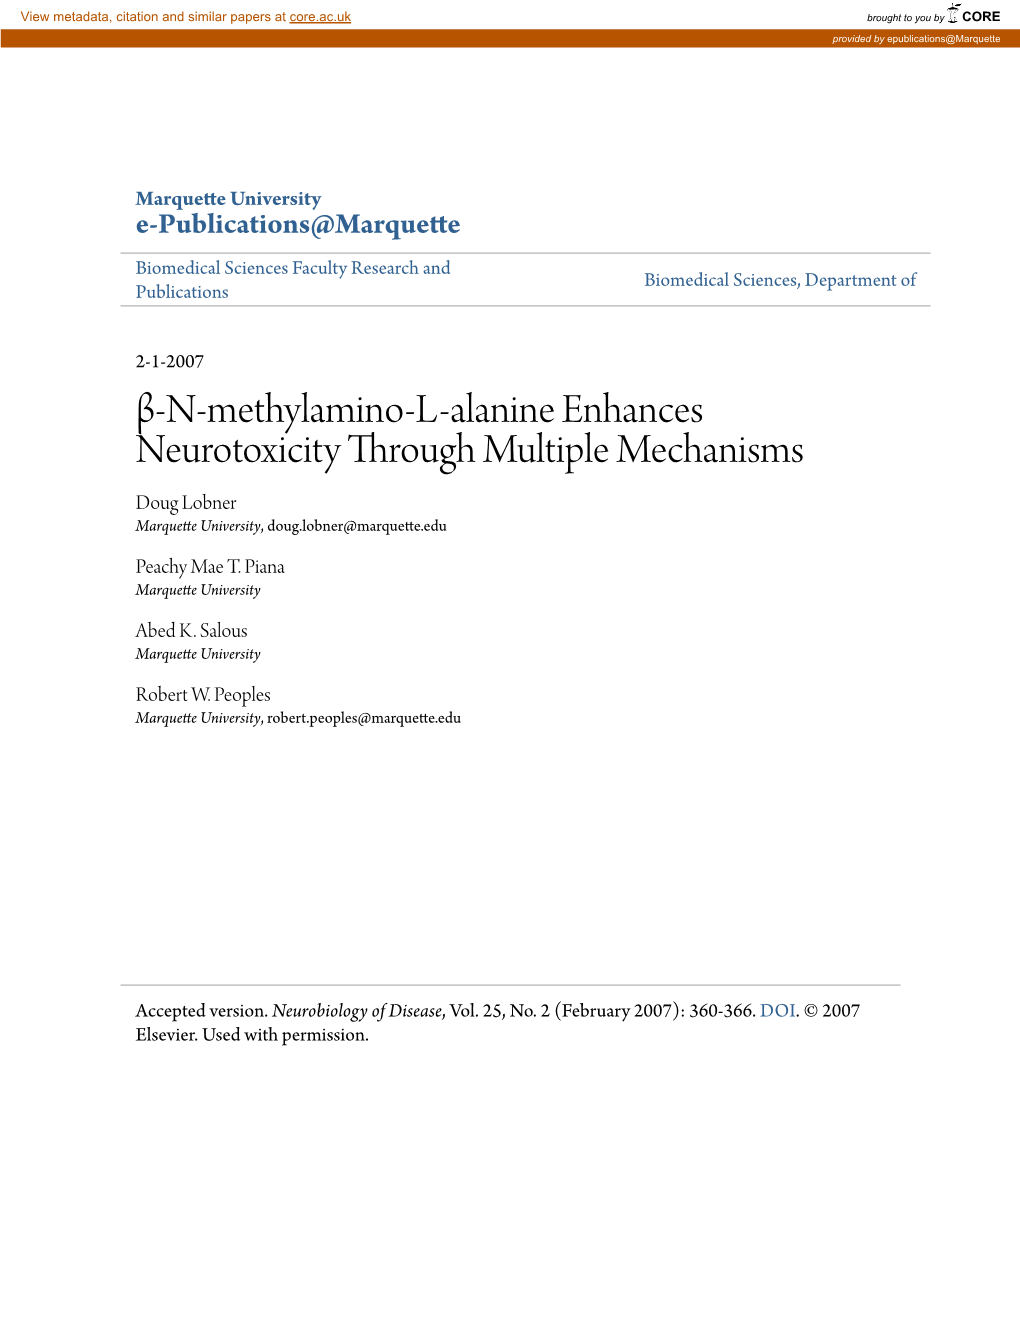 Β-N-Methylamino-L-Alanine Enhances Neurotoxicity Through Multiple Mechanisms Doug Lobner Marquette University, Doug.Lobner@Marquette.Edu